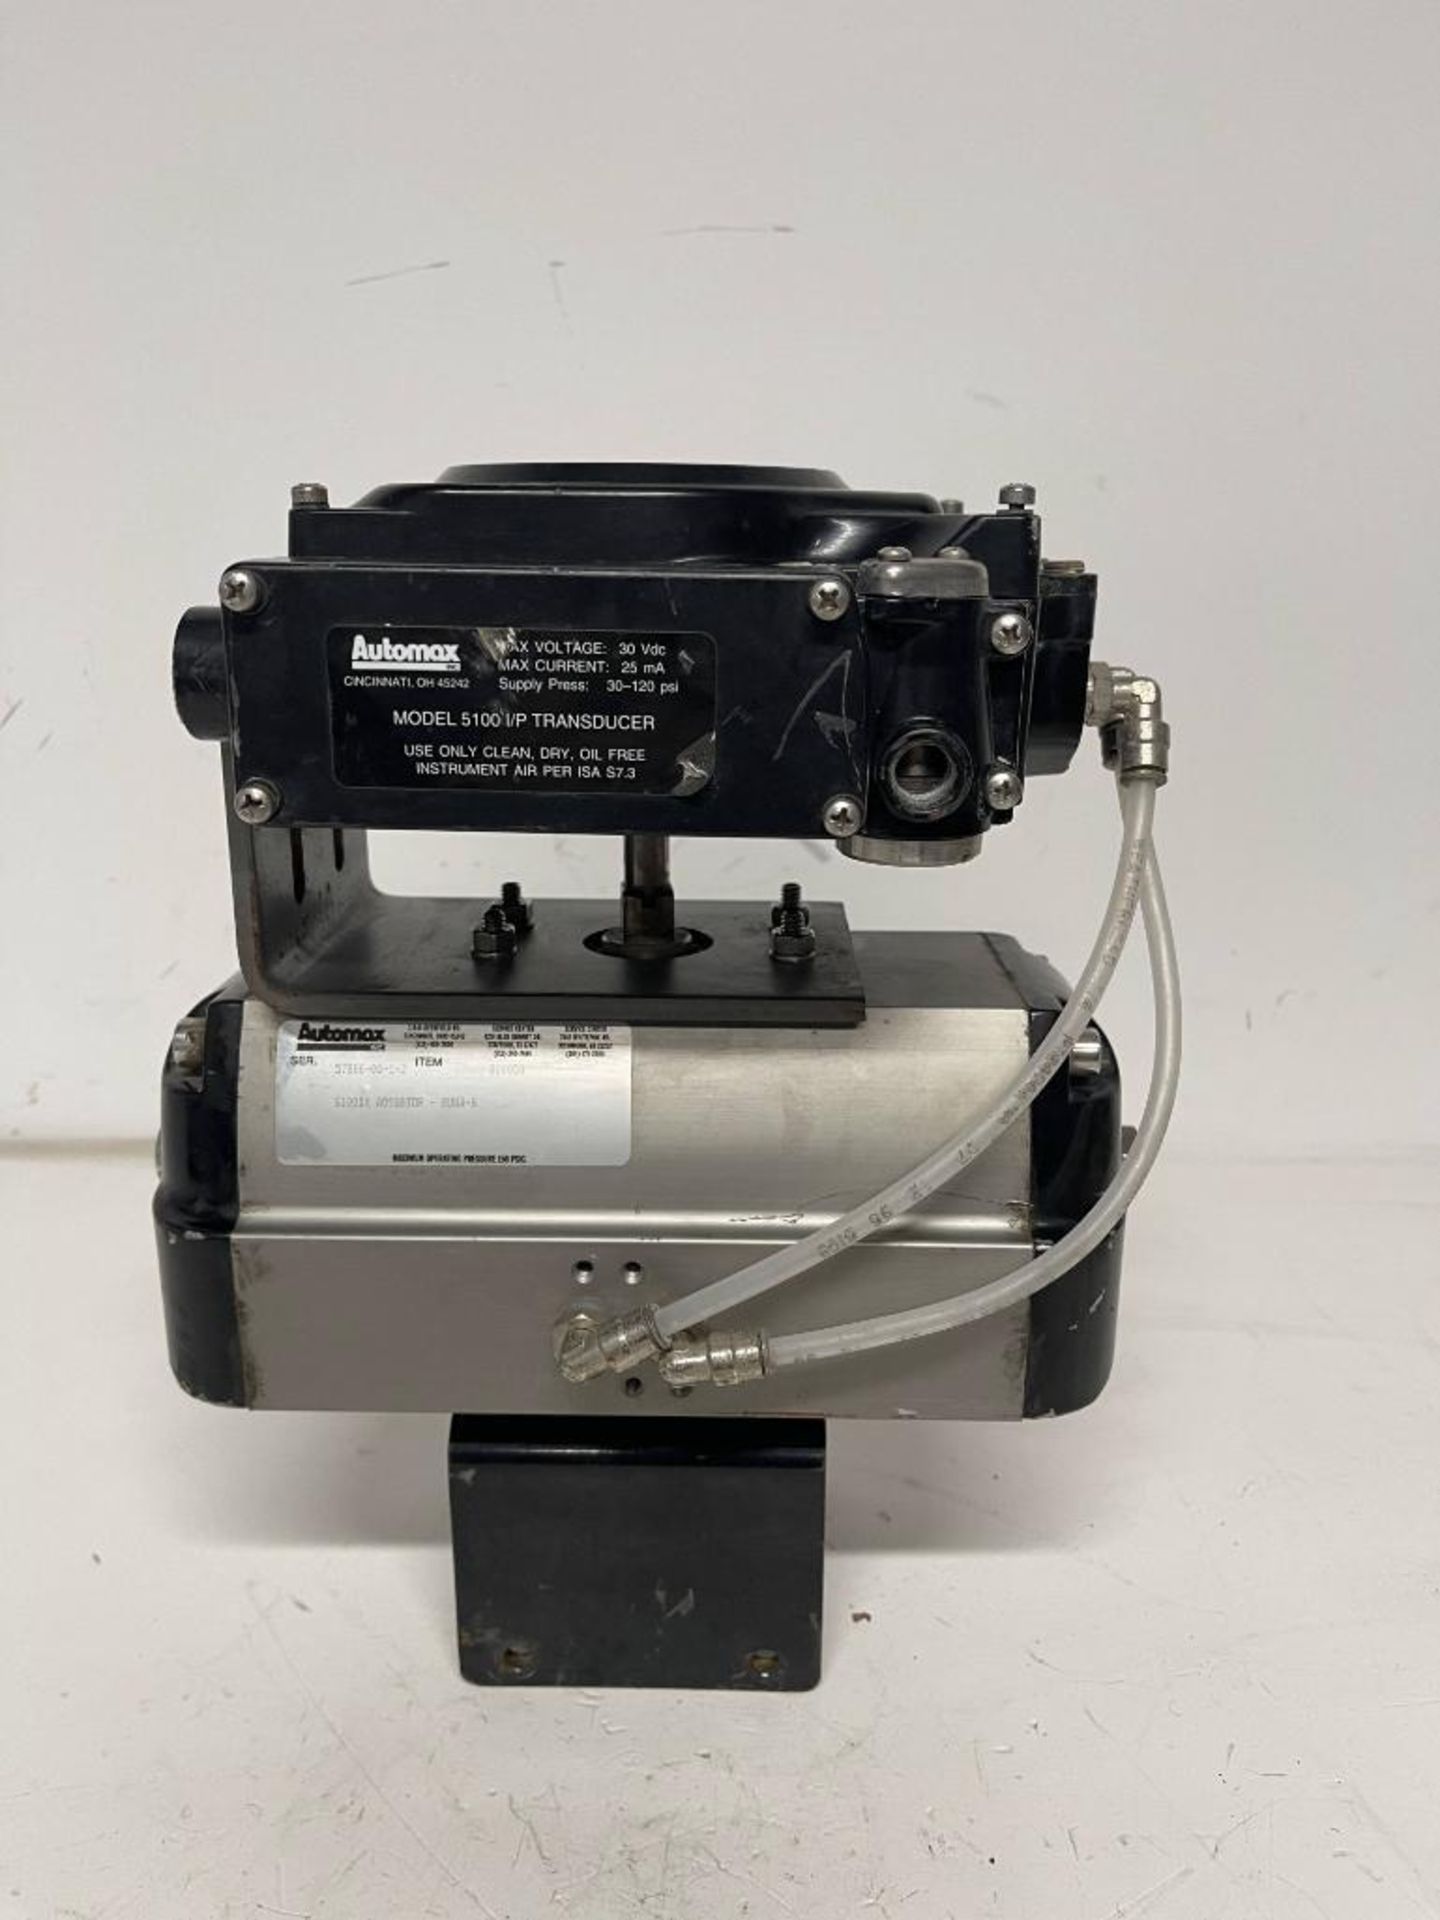 Flowserve automax 5100 I/P transducer S100DA actuator